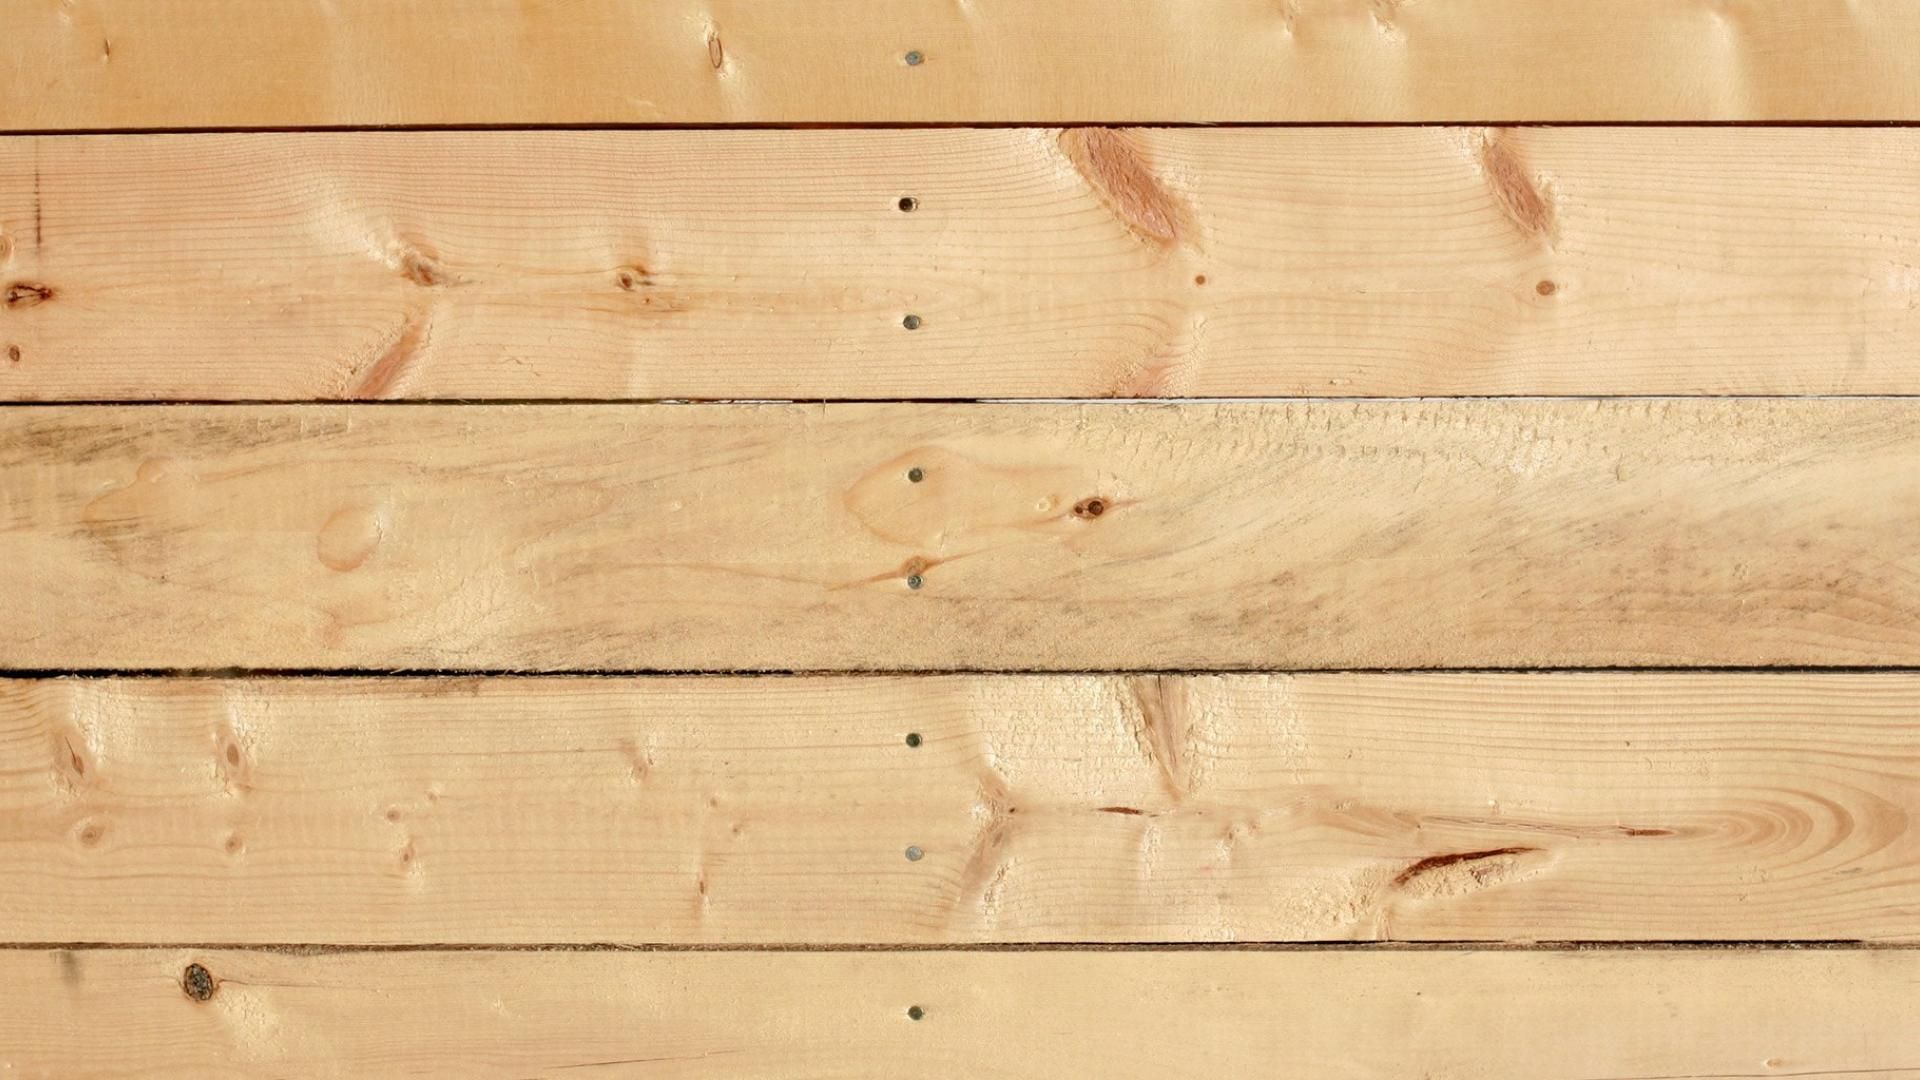 Nền gỗ là lựa chọn thông minh cho nhiều loại thiết kế từ thi công đến trang trí. Nền gỗ giúp tôn lên vẻ đẹp tự nhiên của phòng và dễ dàng kết hợp với các loại vật liệu khác. Hãy xem hình ảnh liên quan để tìm hiểu cách sử dụng nền gỗ để tạo ra sự trang trí cho phòng của bạn.